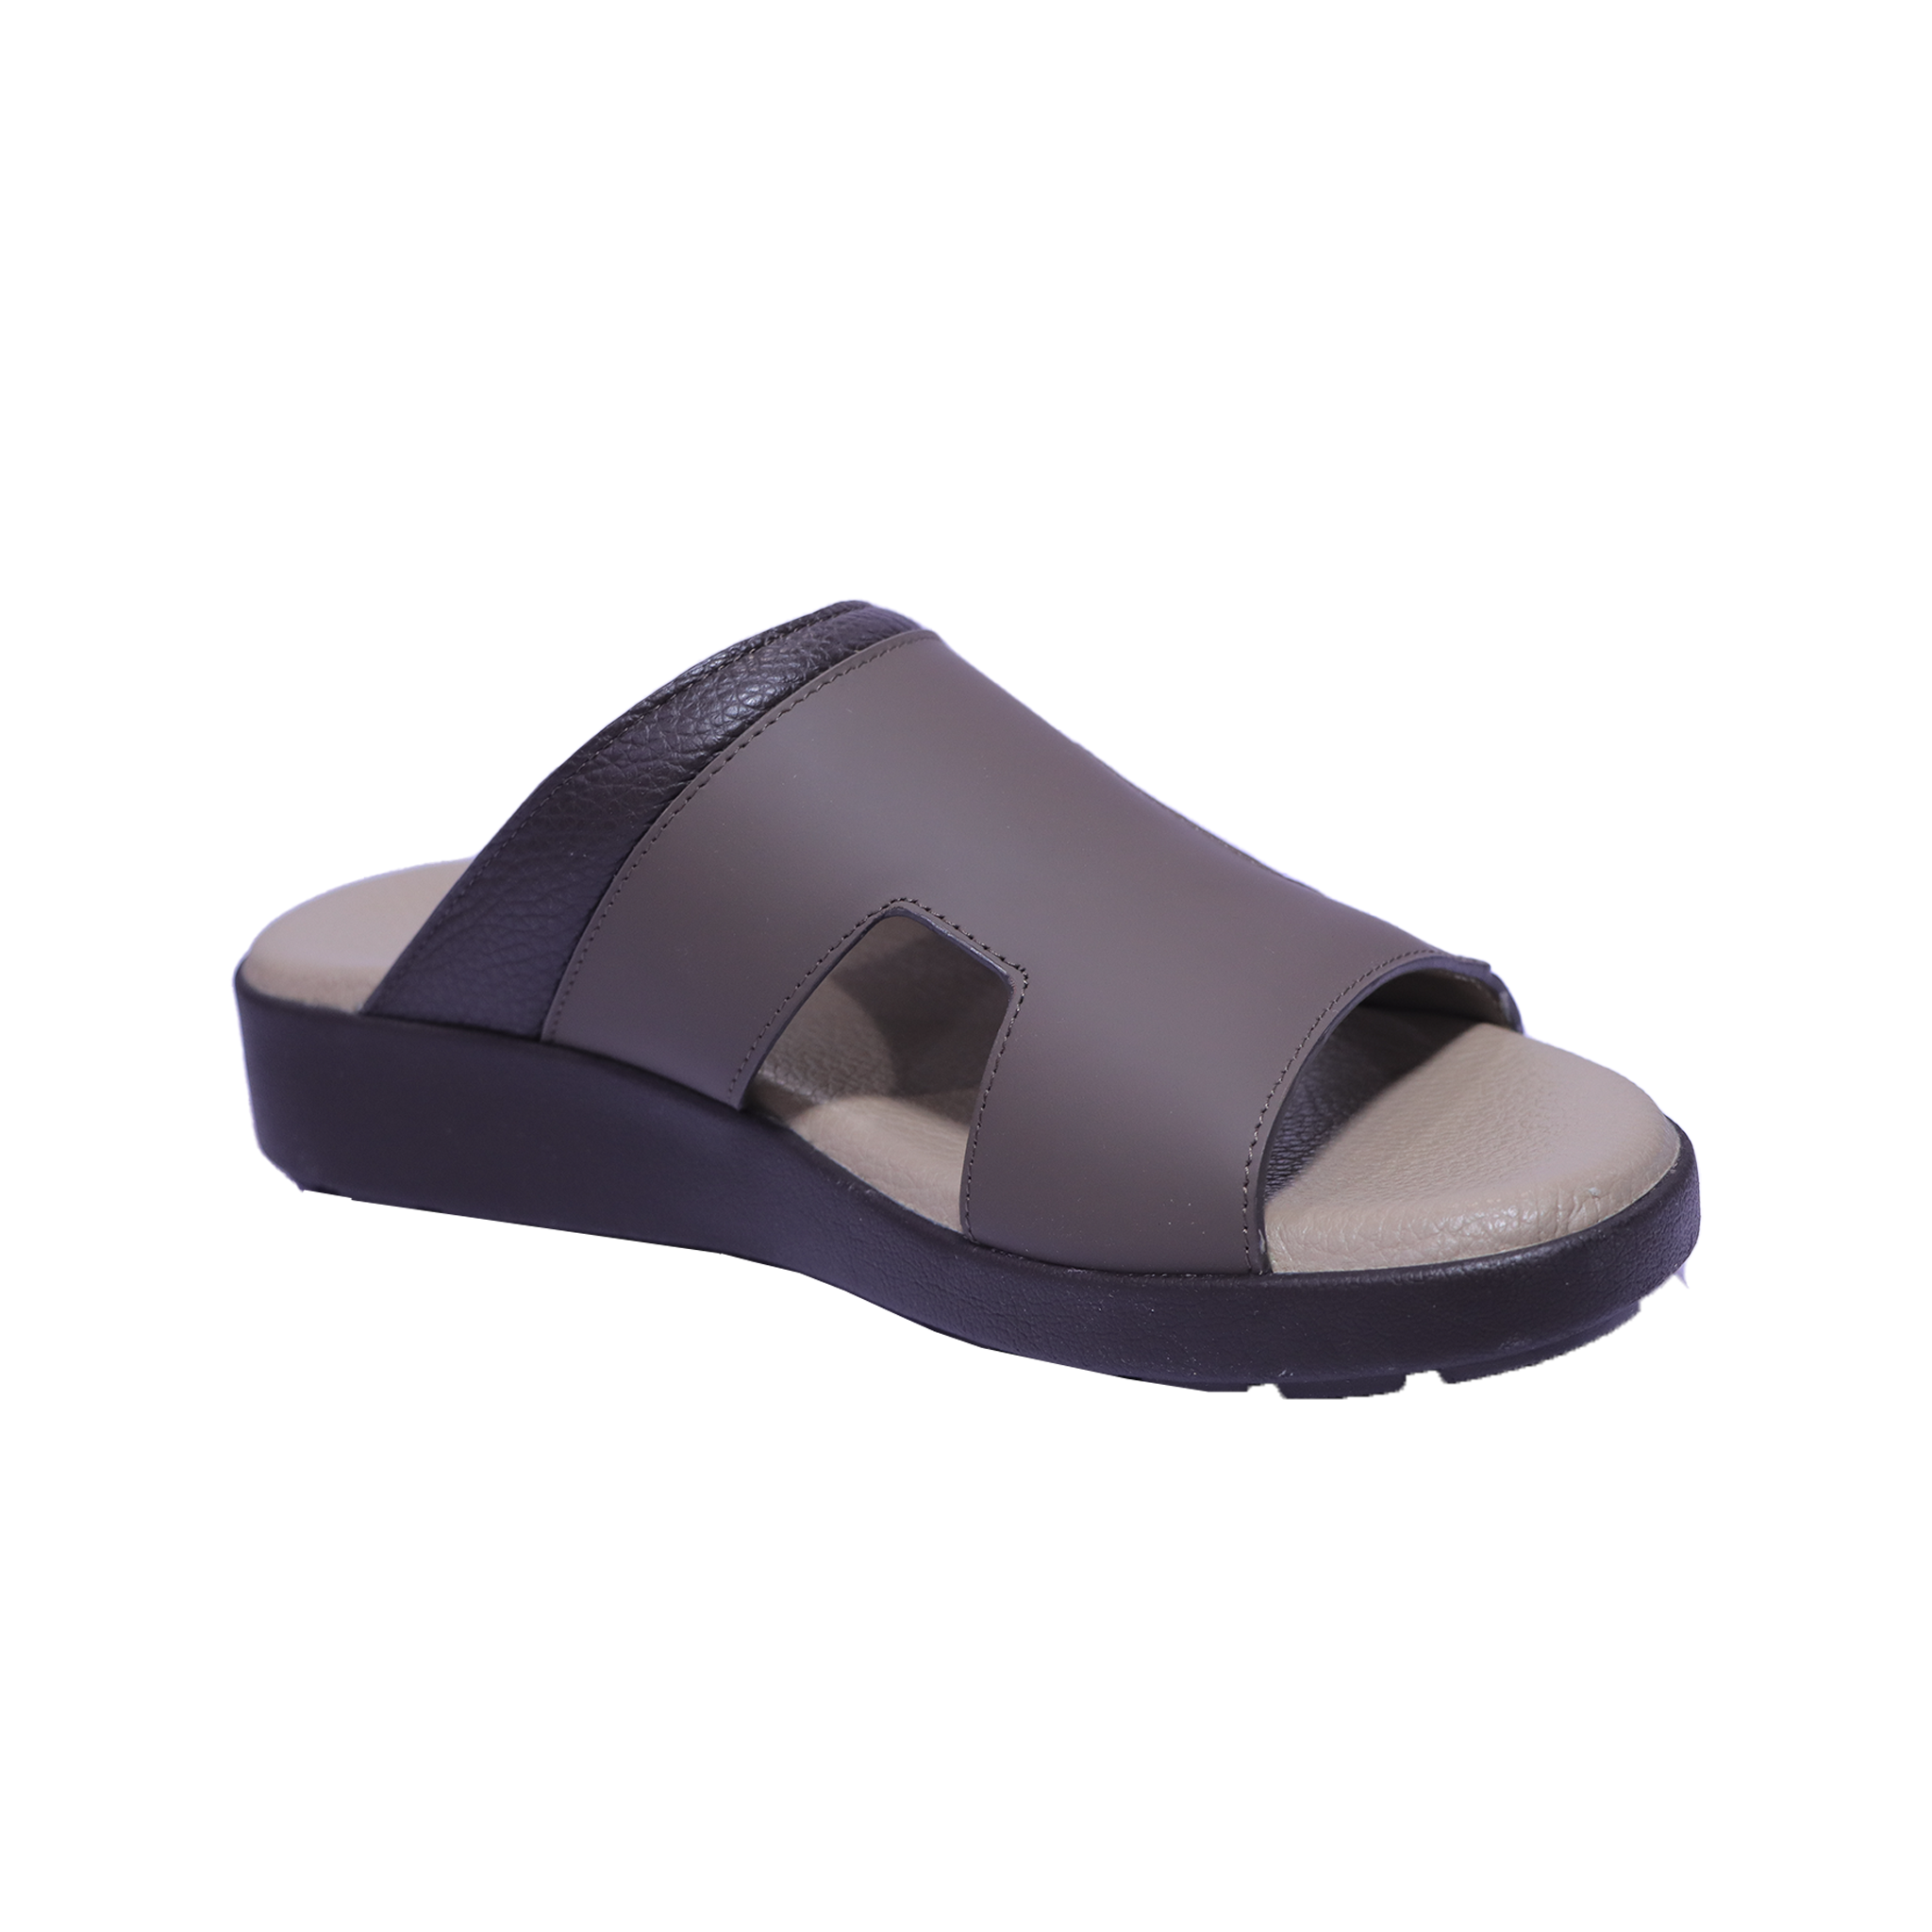 1612-127 - Veroni Sandal Shoes